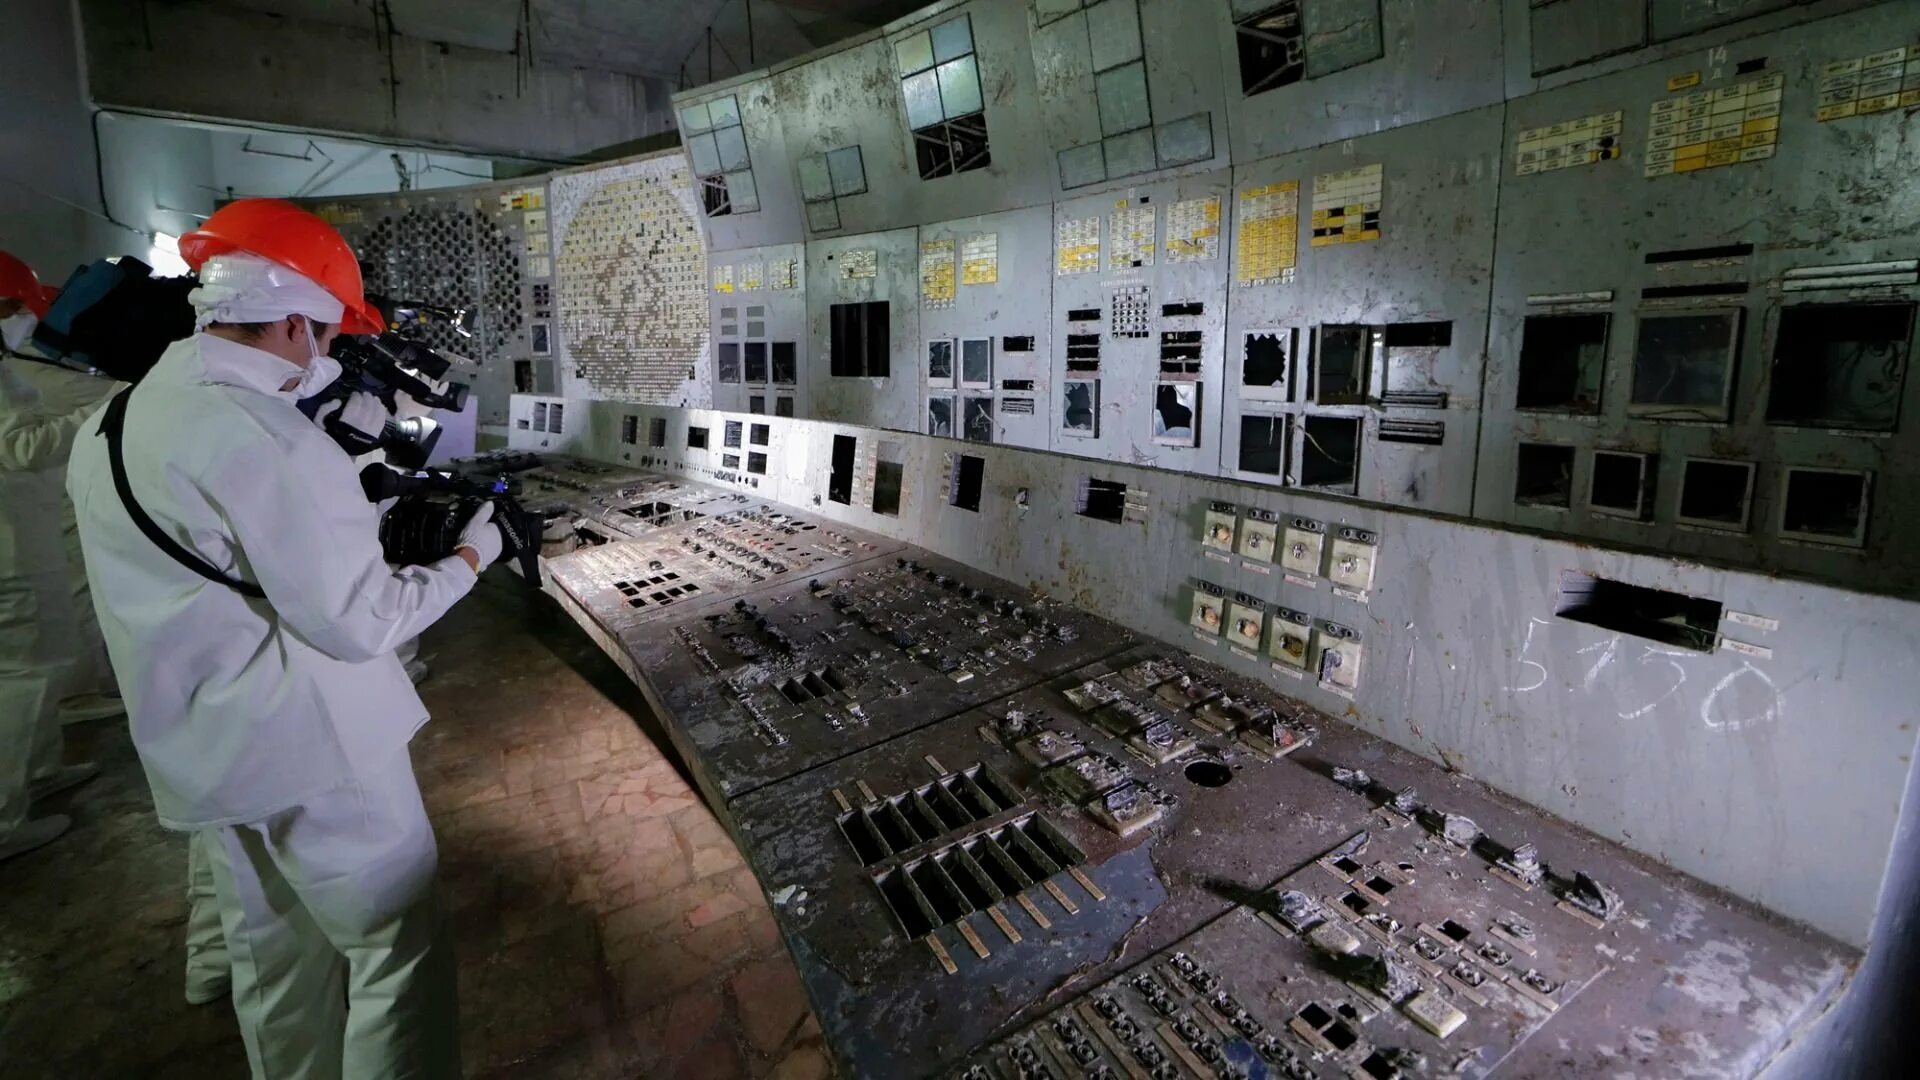 4 Энергоблок Чернобыльской АЭС. Реактор 4 энергоблока ЧАЭС. Чернобыльская АЭС 2022. 4 Энергоблок ЧАЭС 1986. Станция радиации